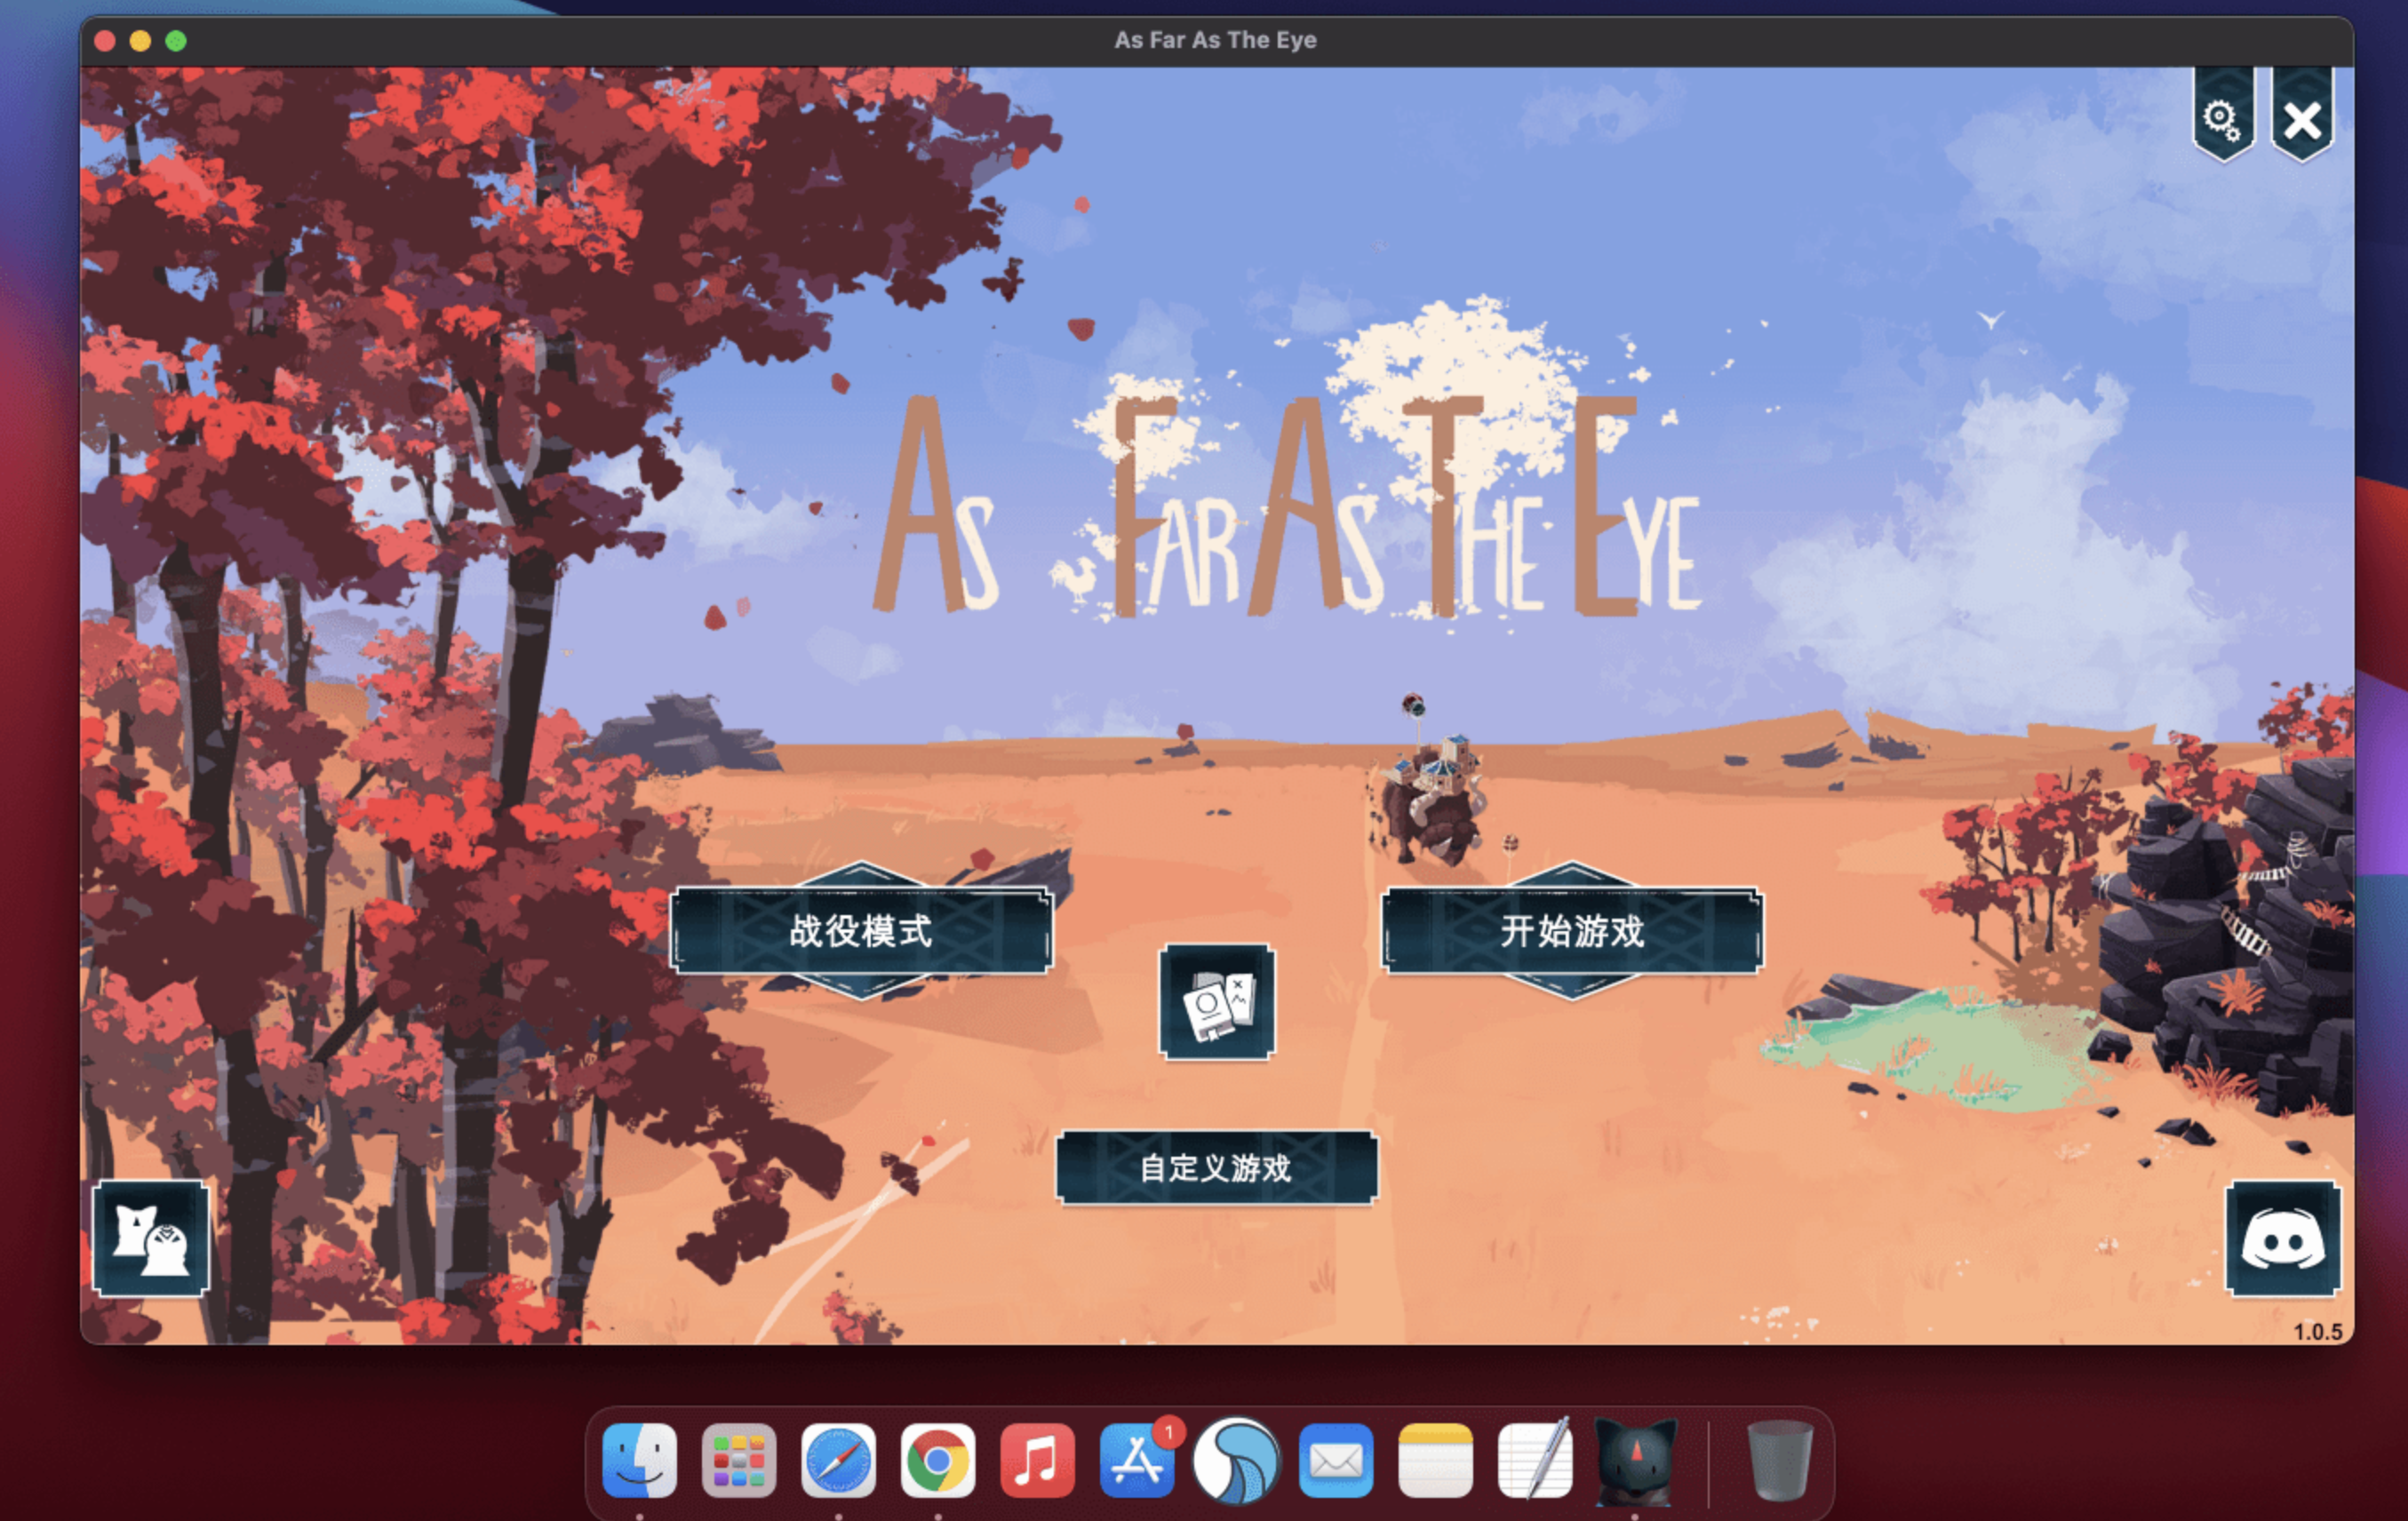 四海旅人 for Mac v1.1.1a As Far As The Eye 中文原生版 苹果电脑